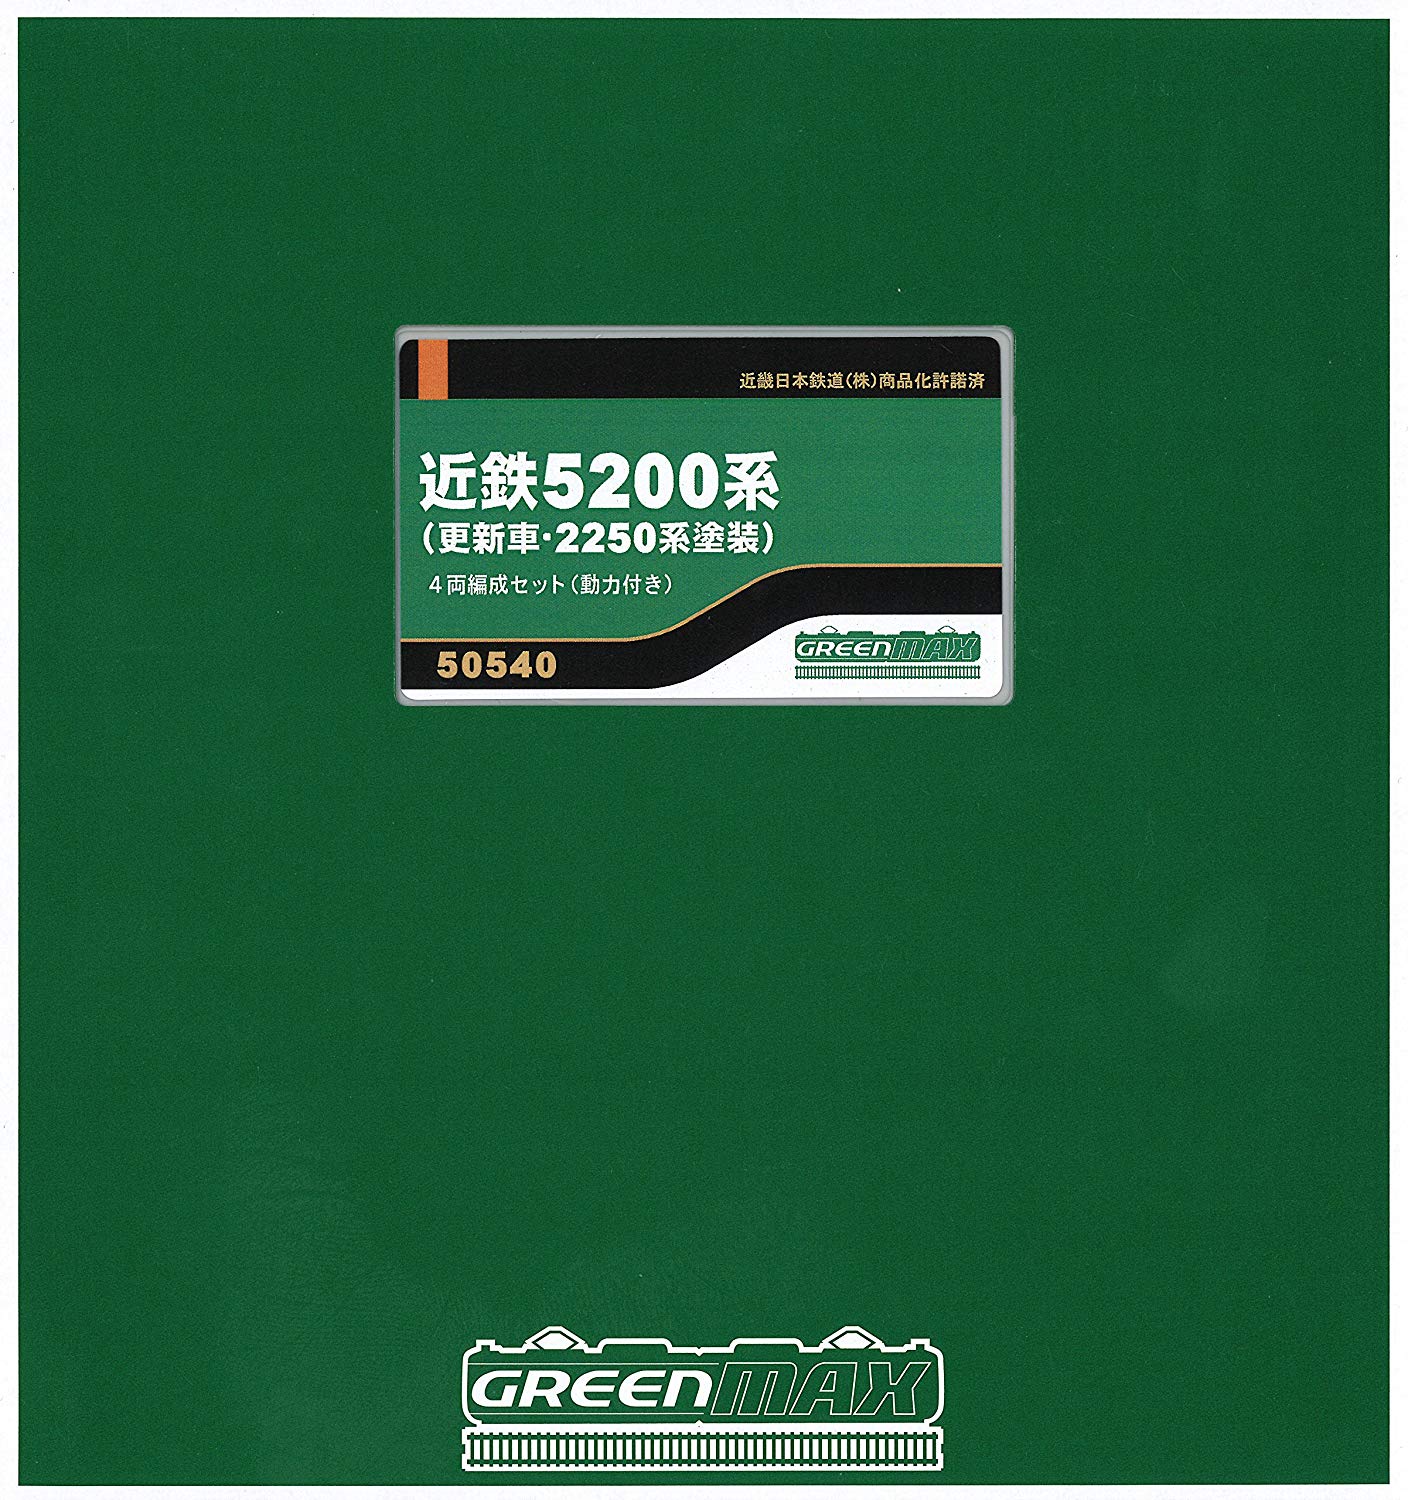 GREENMAX グリーンマックス 50540 近鉄5200系 更新車・2250系塗装 4両編成セット